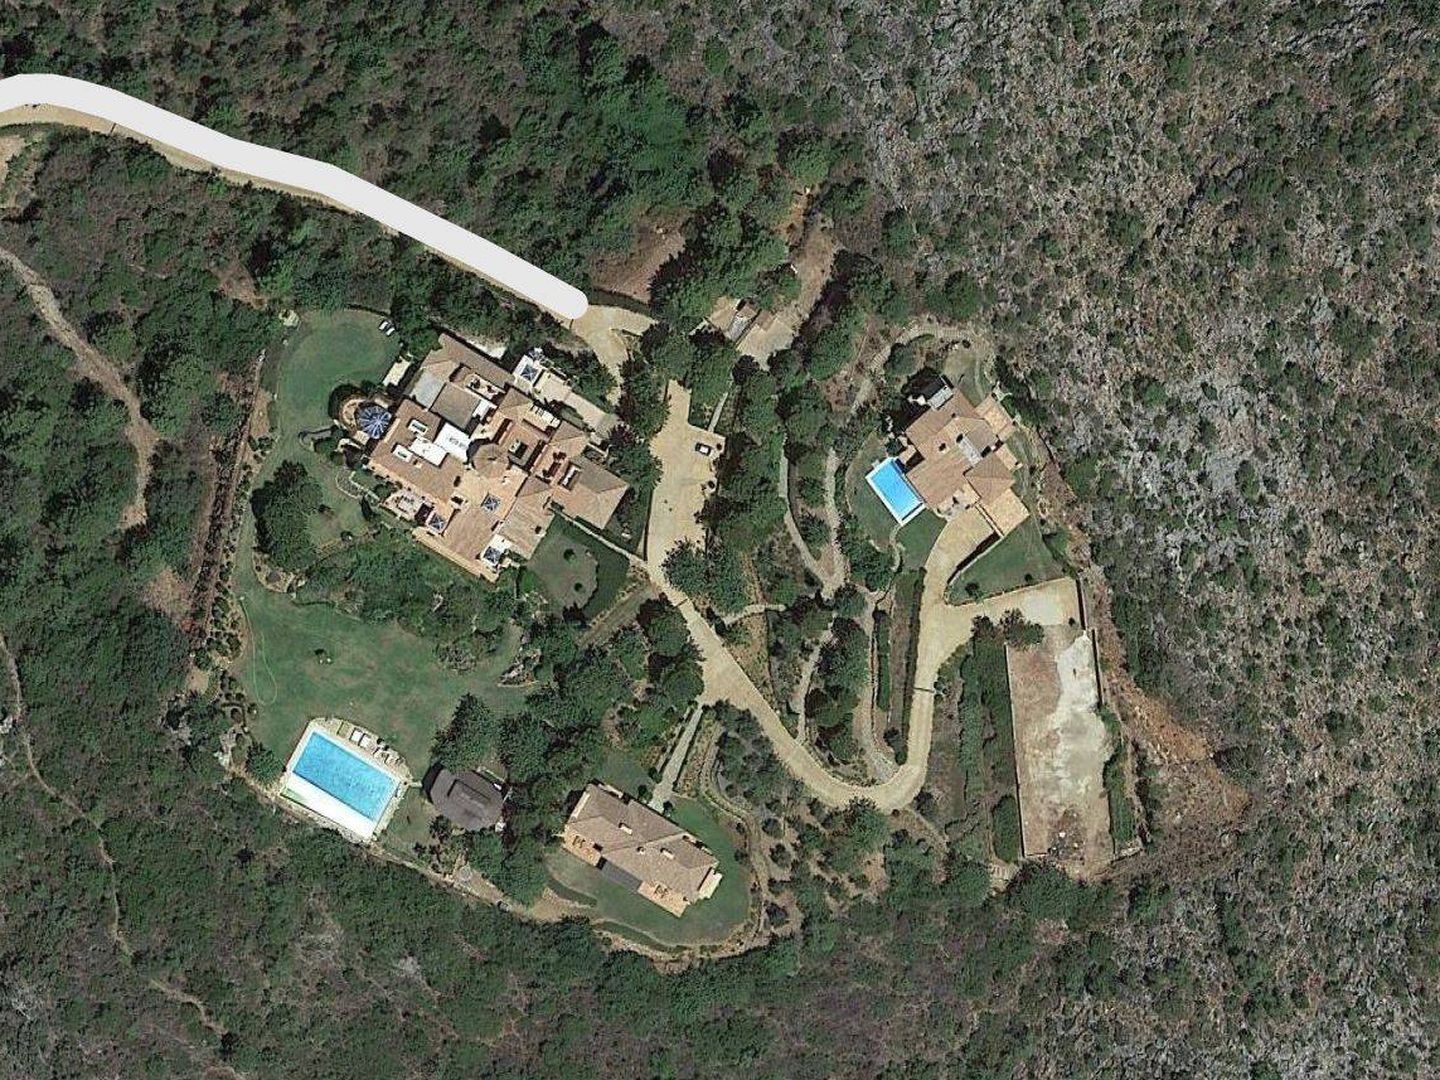 Villa Sagitario, la casa de Gunilla en Marbella, con la casa de invitados y el proyecto de helipuerto.